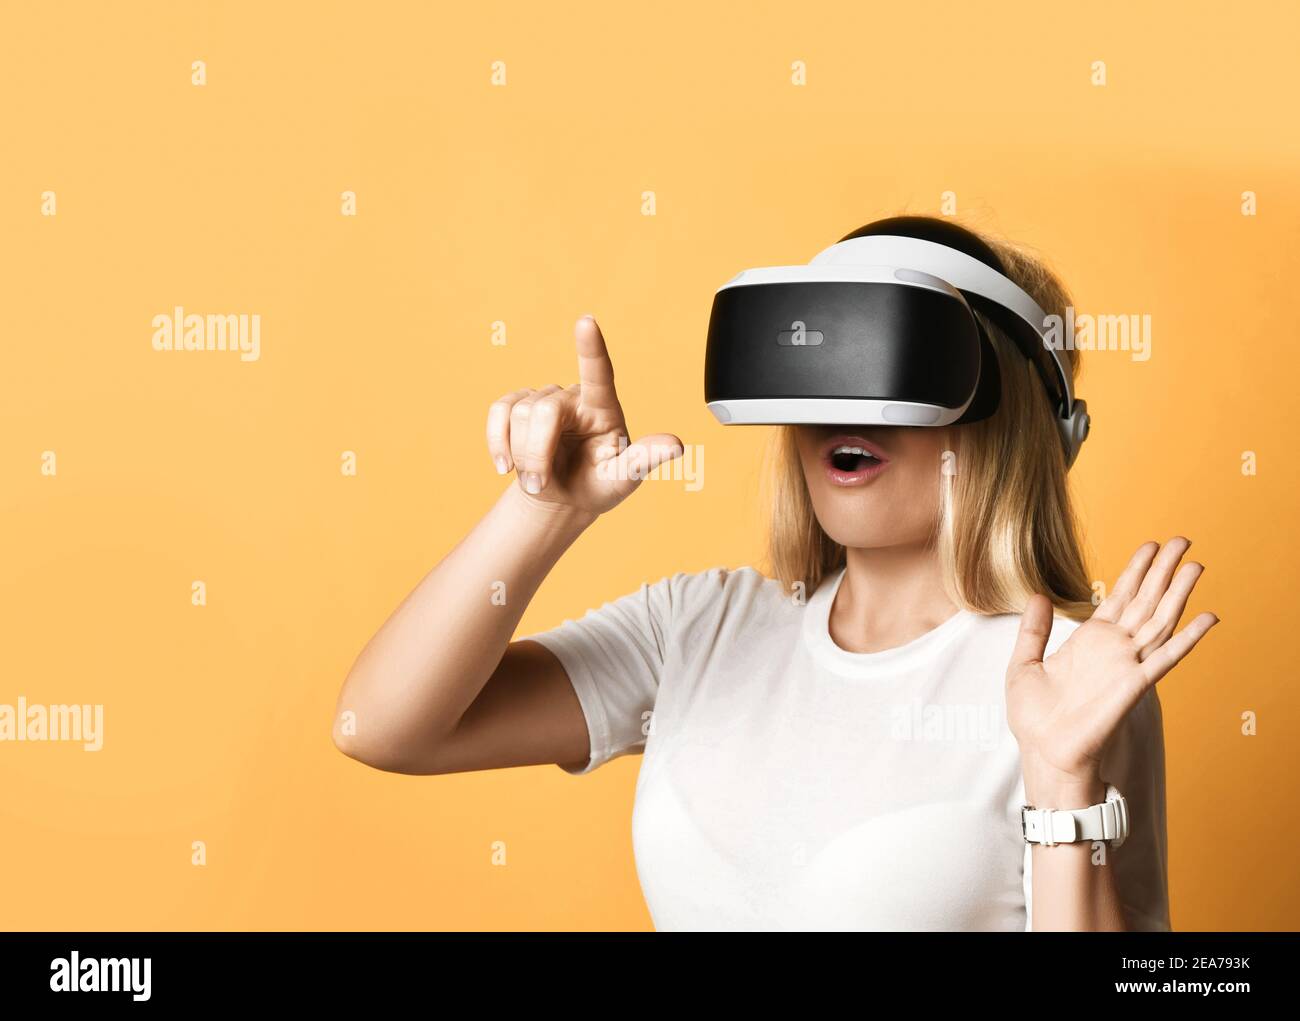 Ritratto di donna in una t-shirt bianca con occhiali VR esplorando realtà aumentata premendo il tasto virtuale con le dita Foto Stock